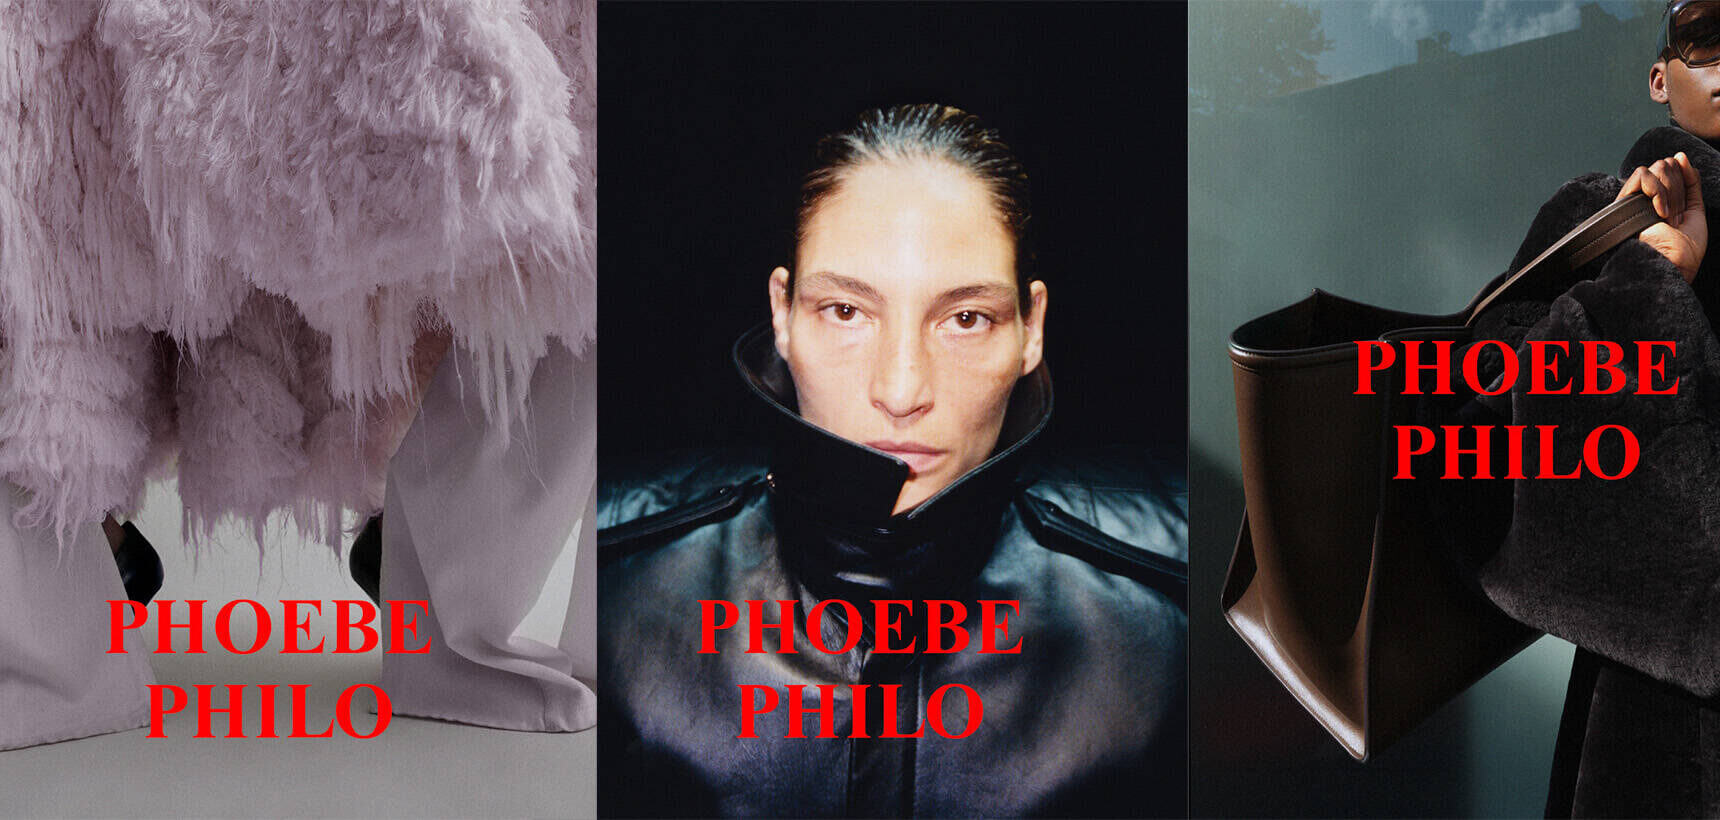 Phoebe Philo returns